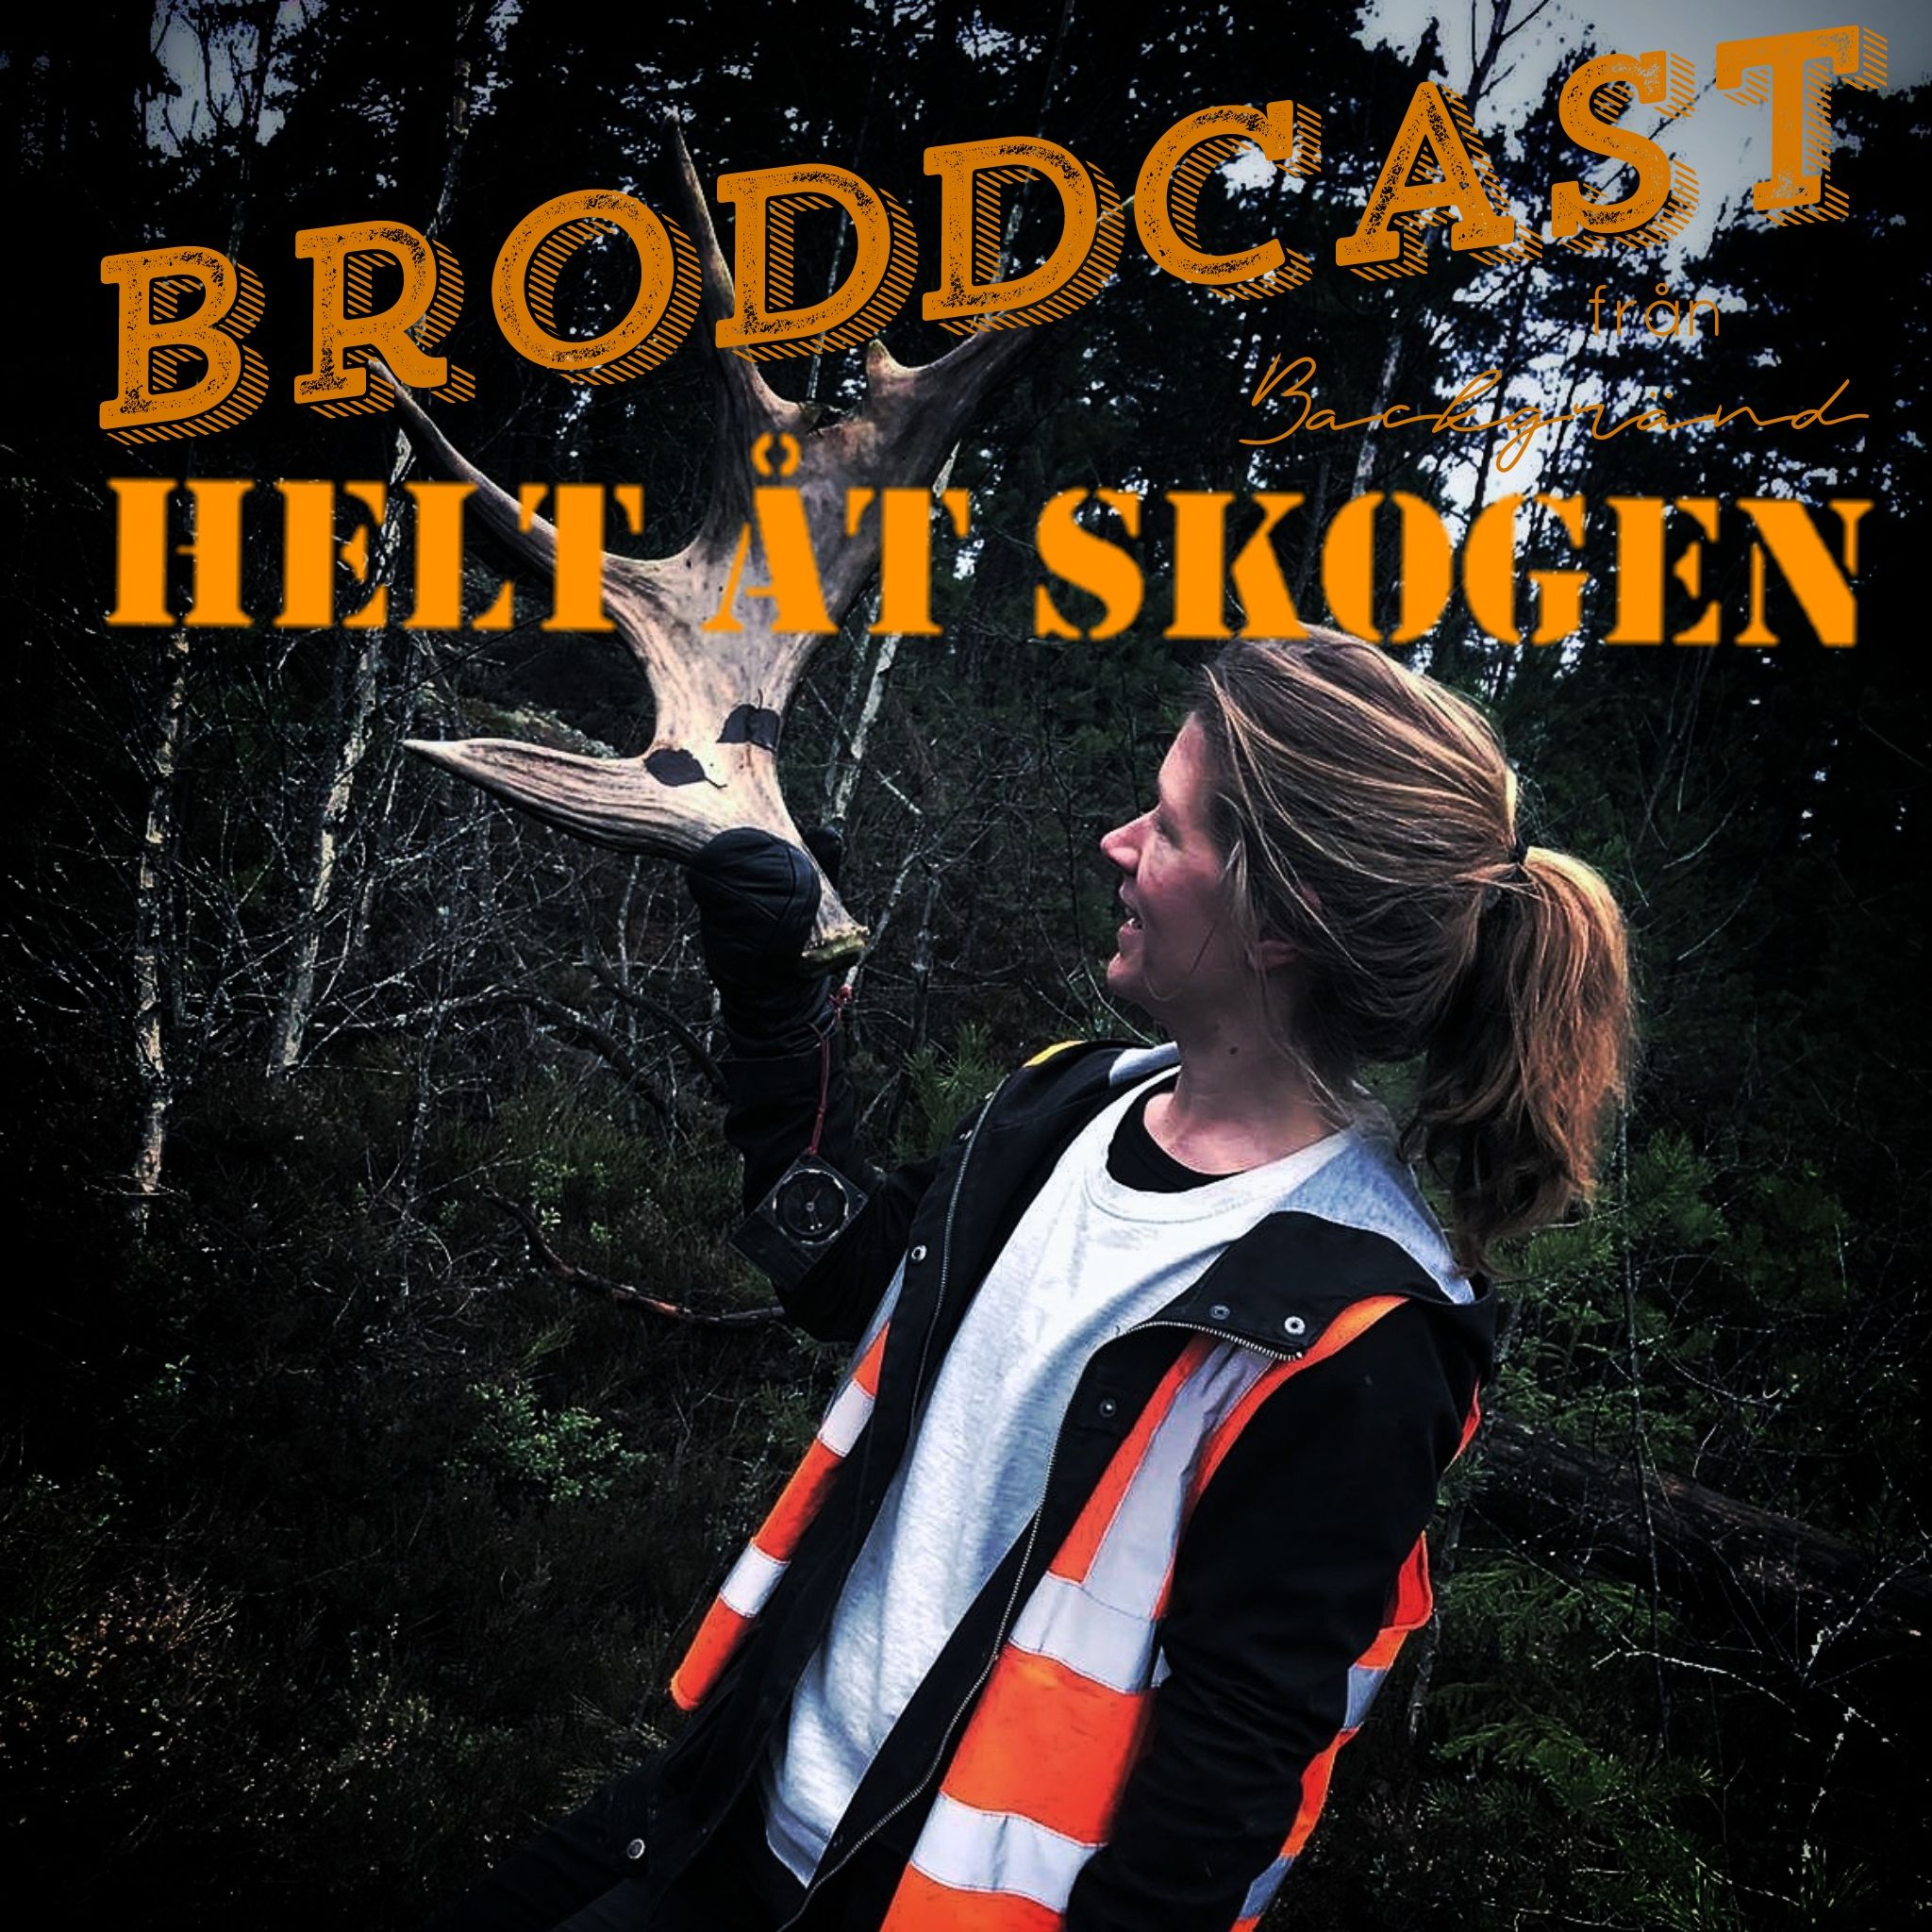 Broddcast#3: Roger i Böle